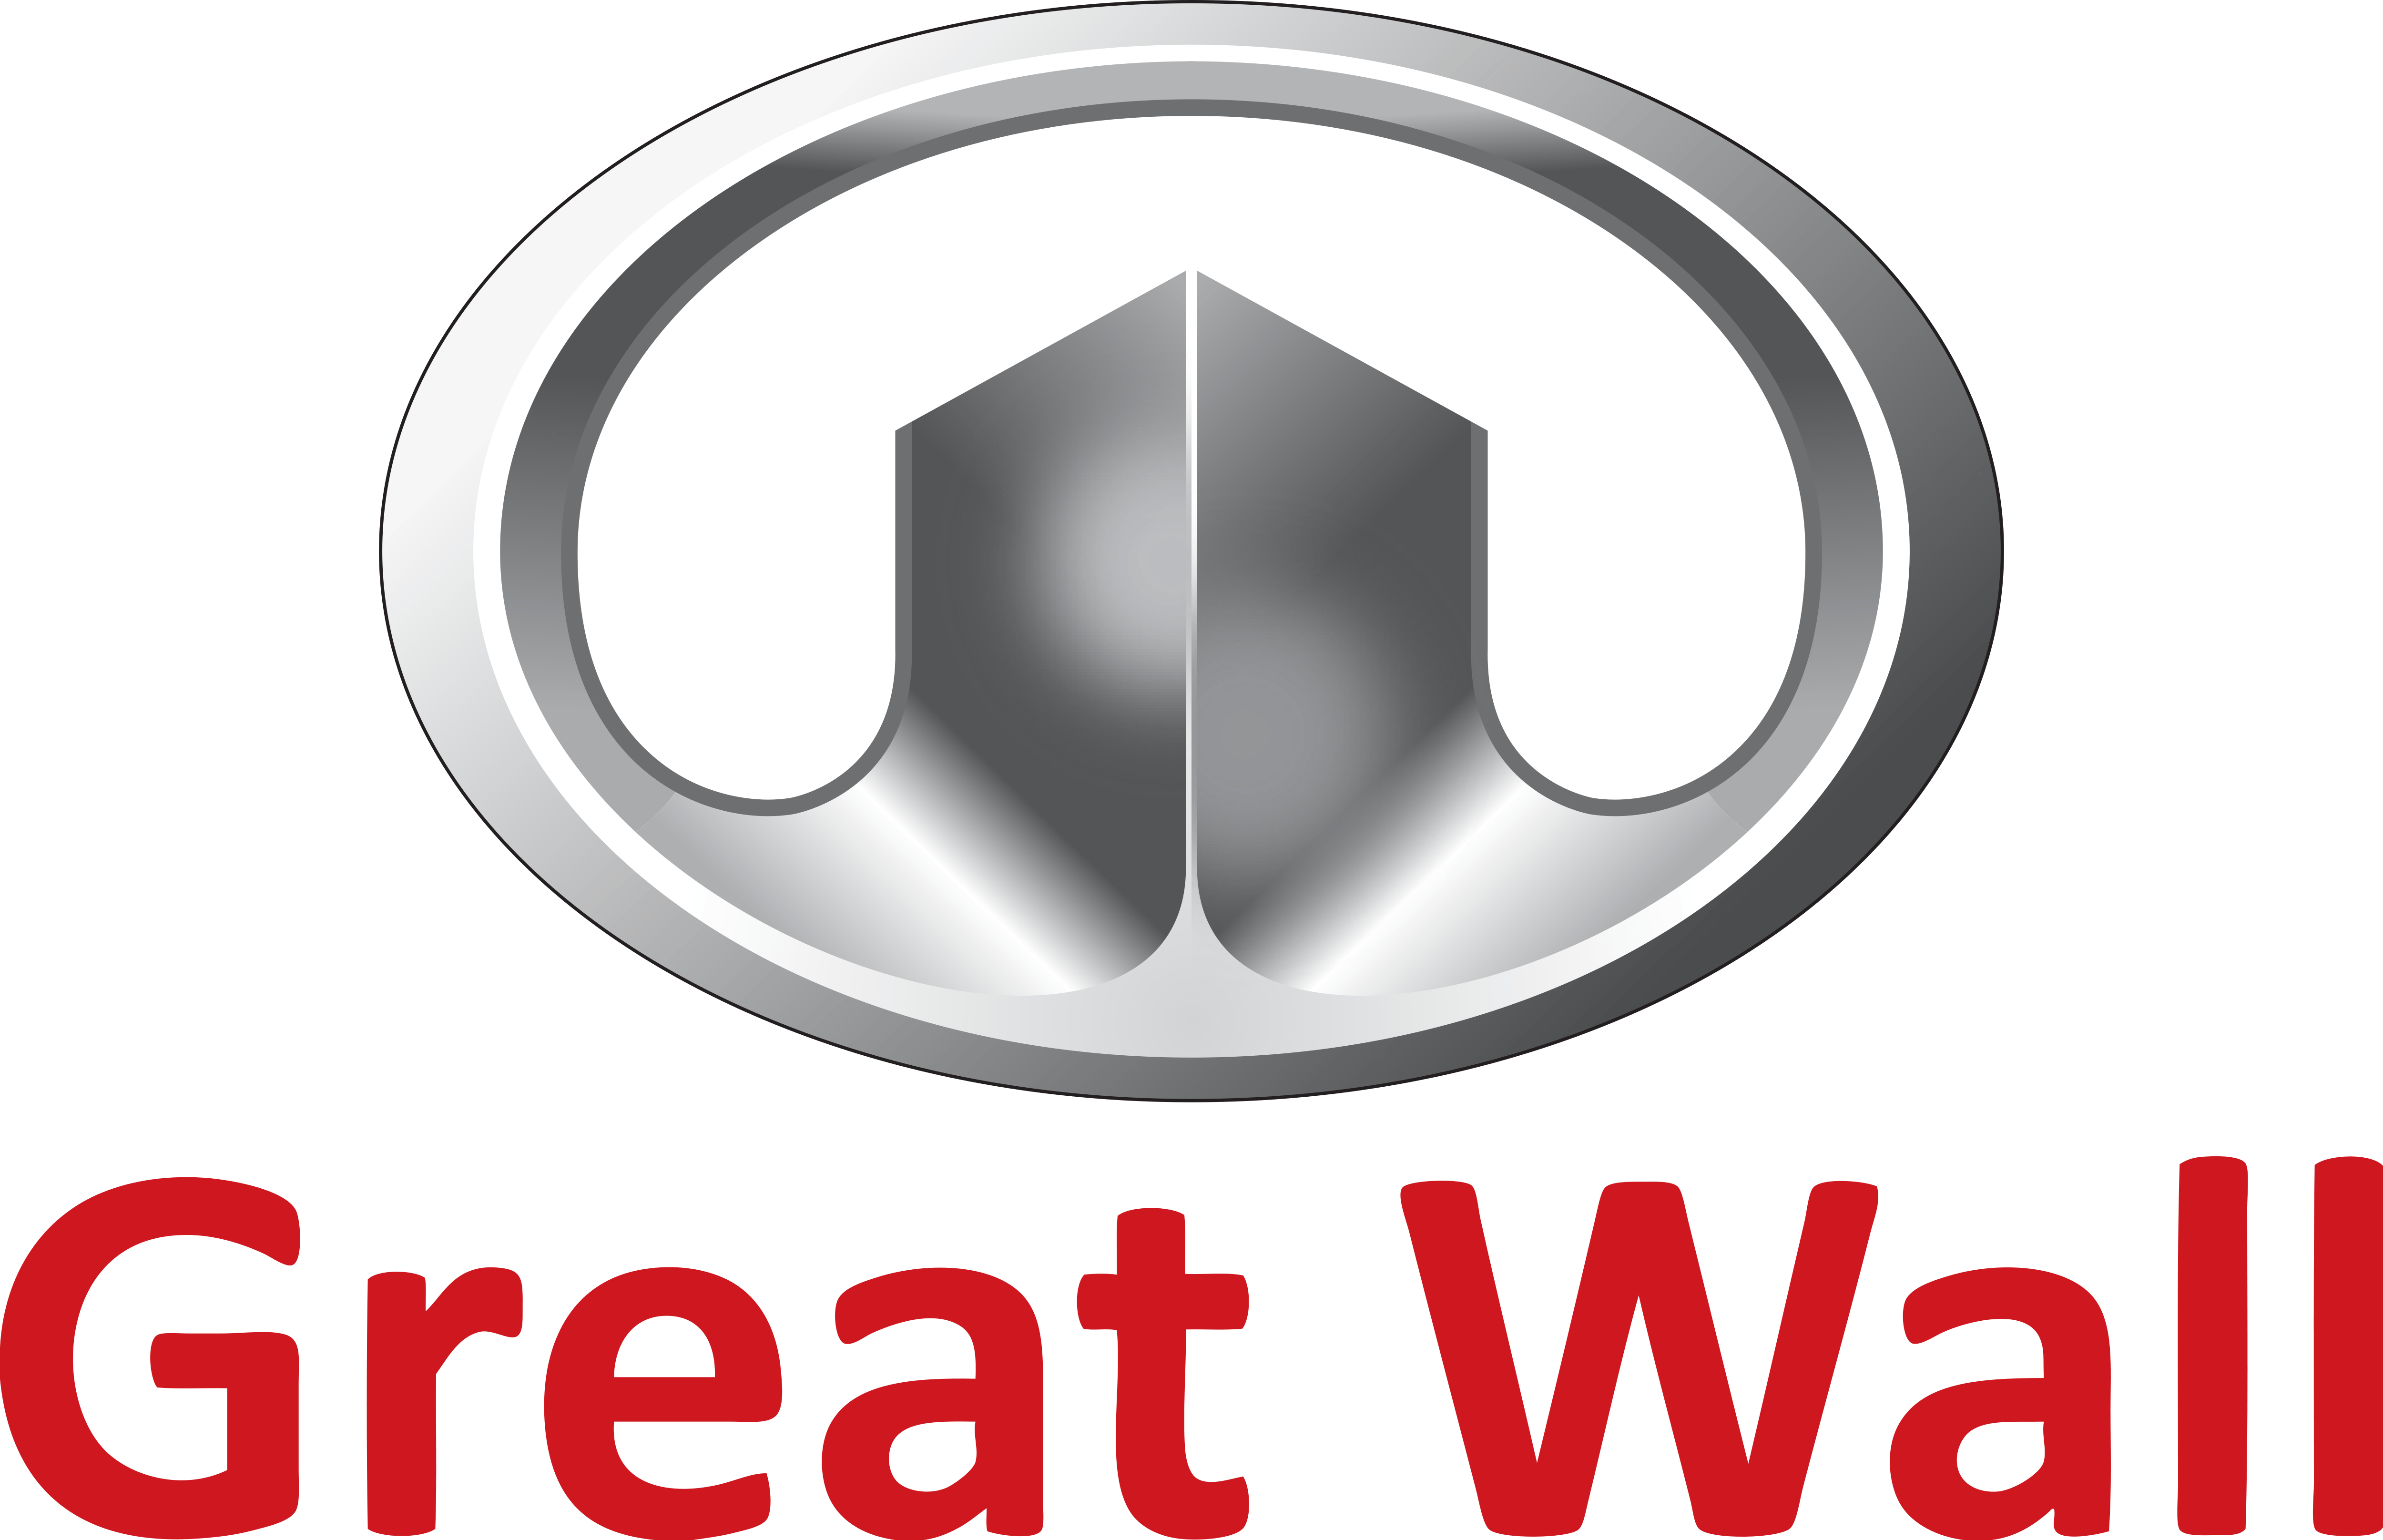 Great Wall Motors Logo - Great Wall Motors Company – Logos Download